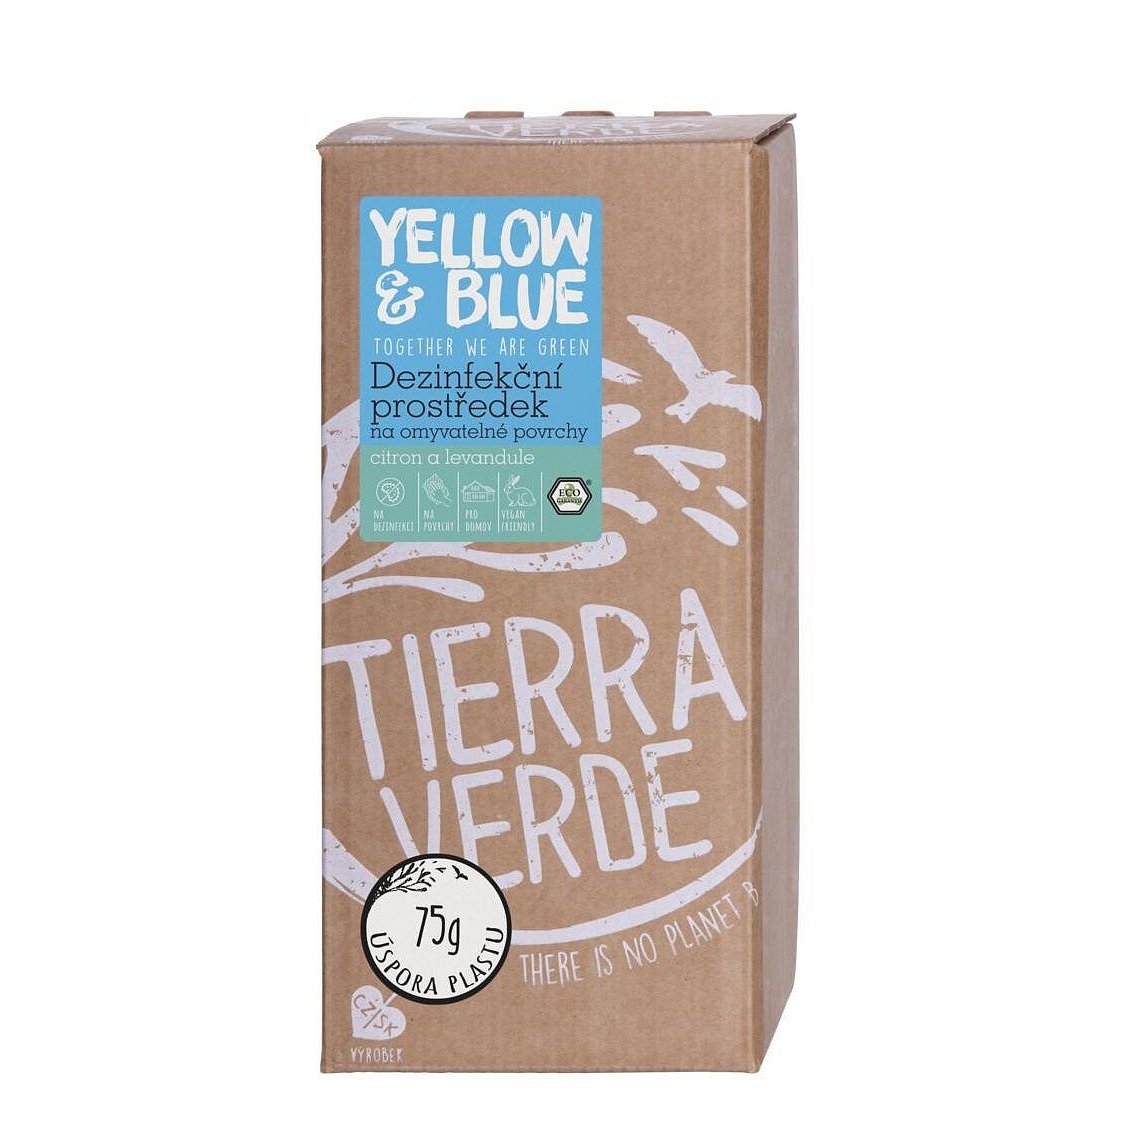 Tierra Verde Dezinfekční prostředek na omyvatelné povrchy citron a levandule 2 l